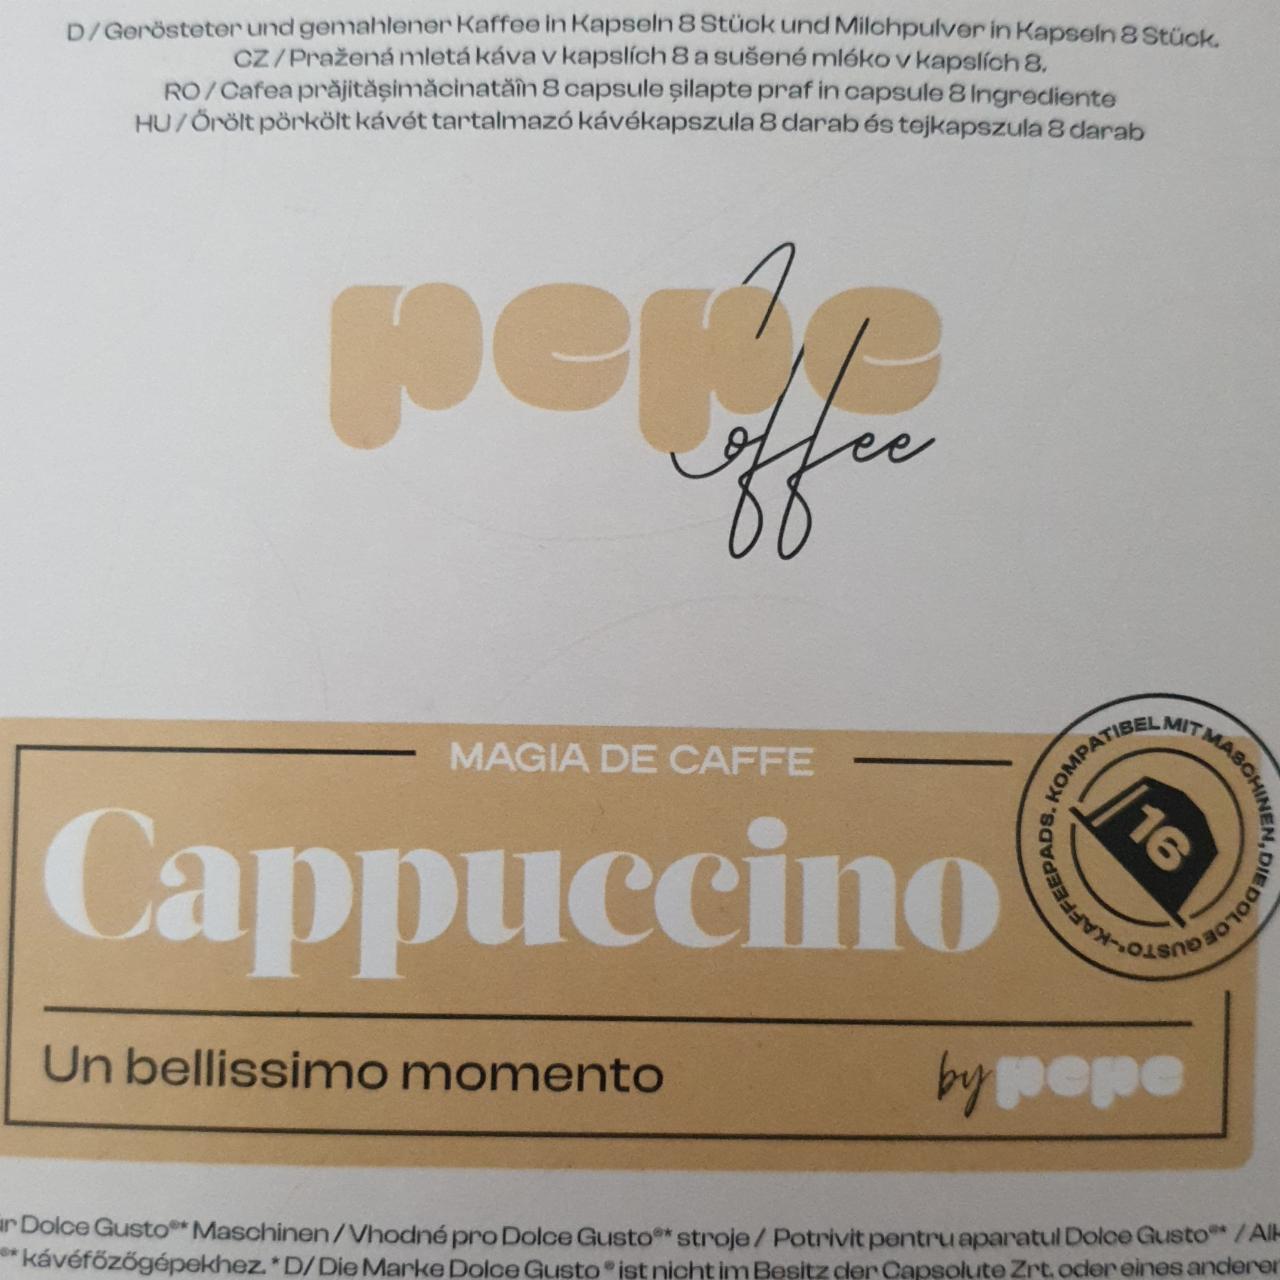 Fotografie - Cappuccino Pepe Coffee